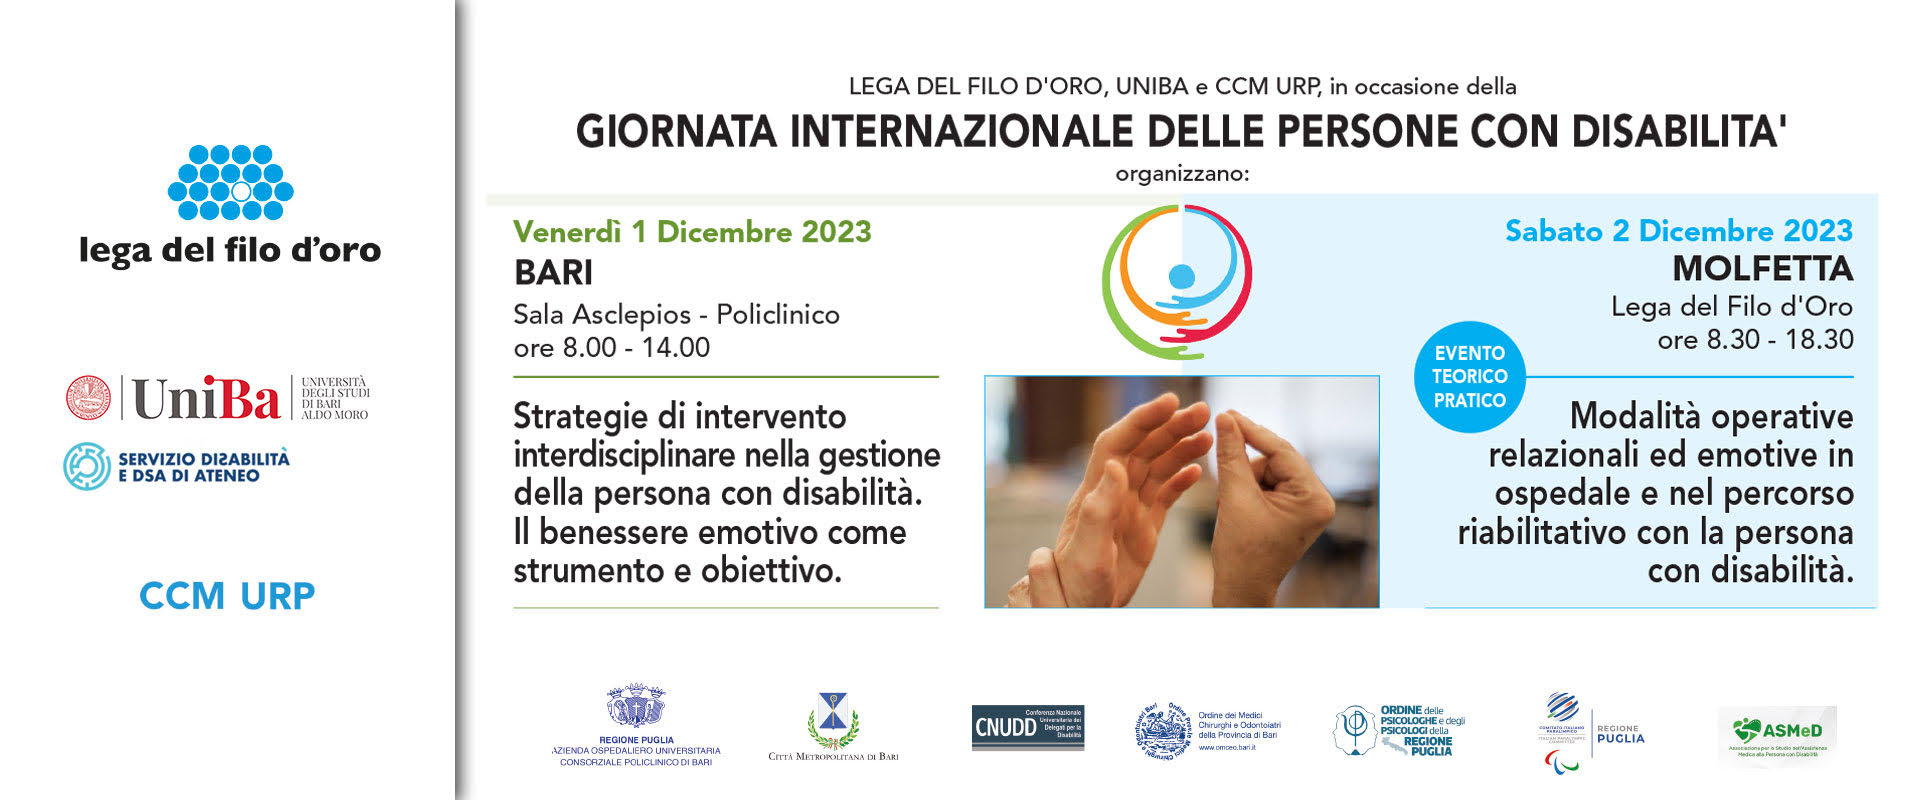 Uniba, Lega del Filo d'Oro e Comitato Consuntivo Misto Regionale insieme nella Giornata Internazionale delle Persone con Disabilità